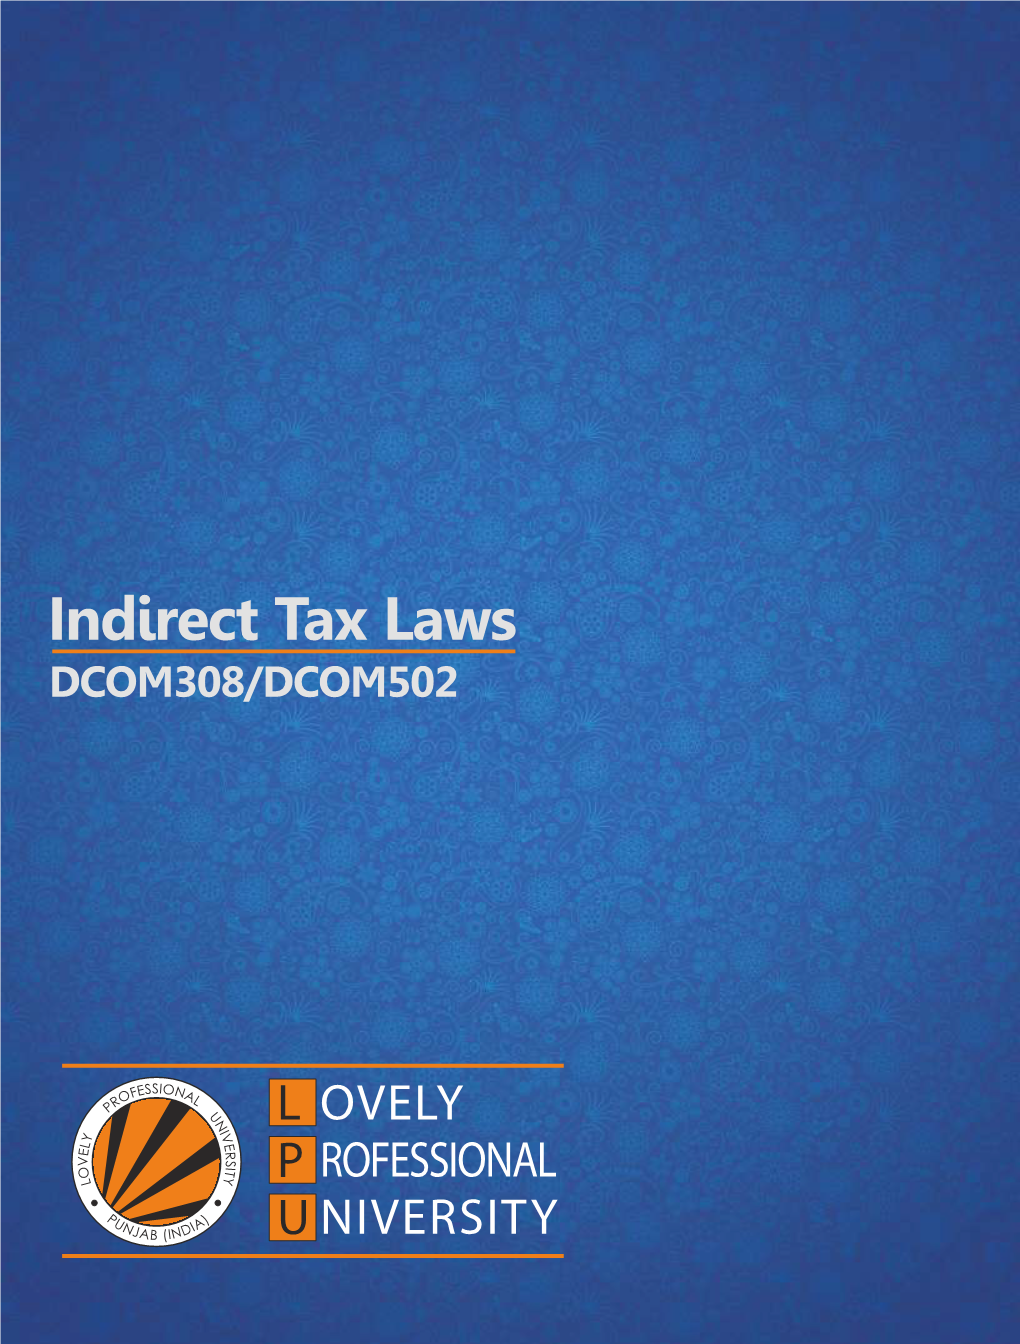 Indirect Tax Laws DCOM308/DCOM502